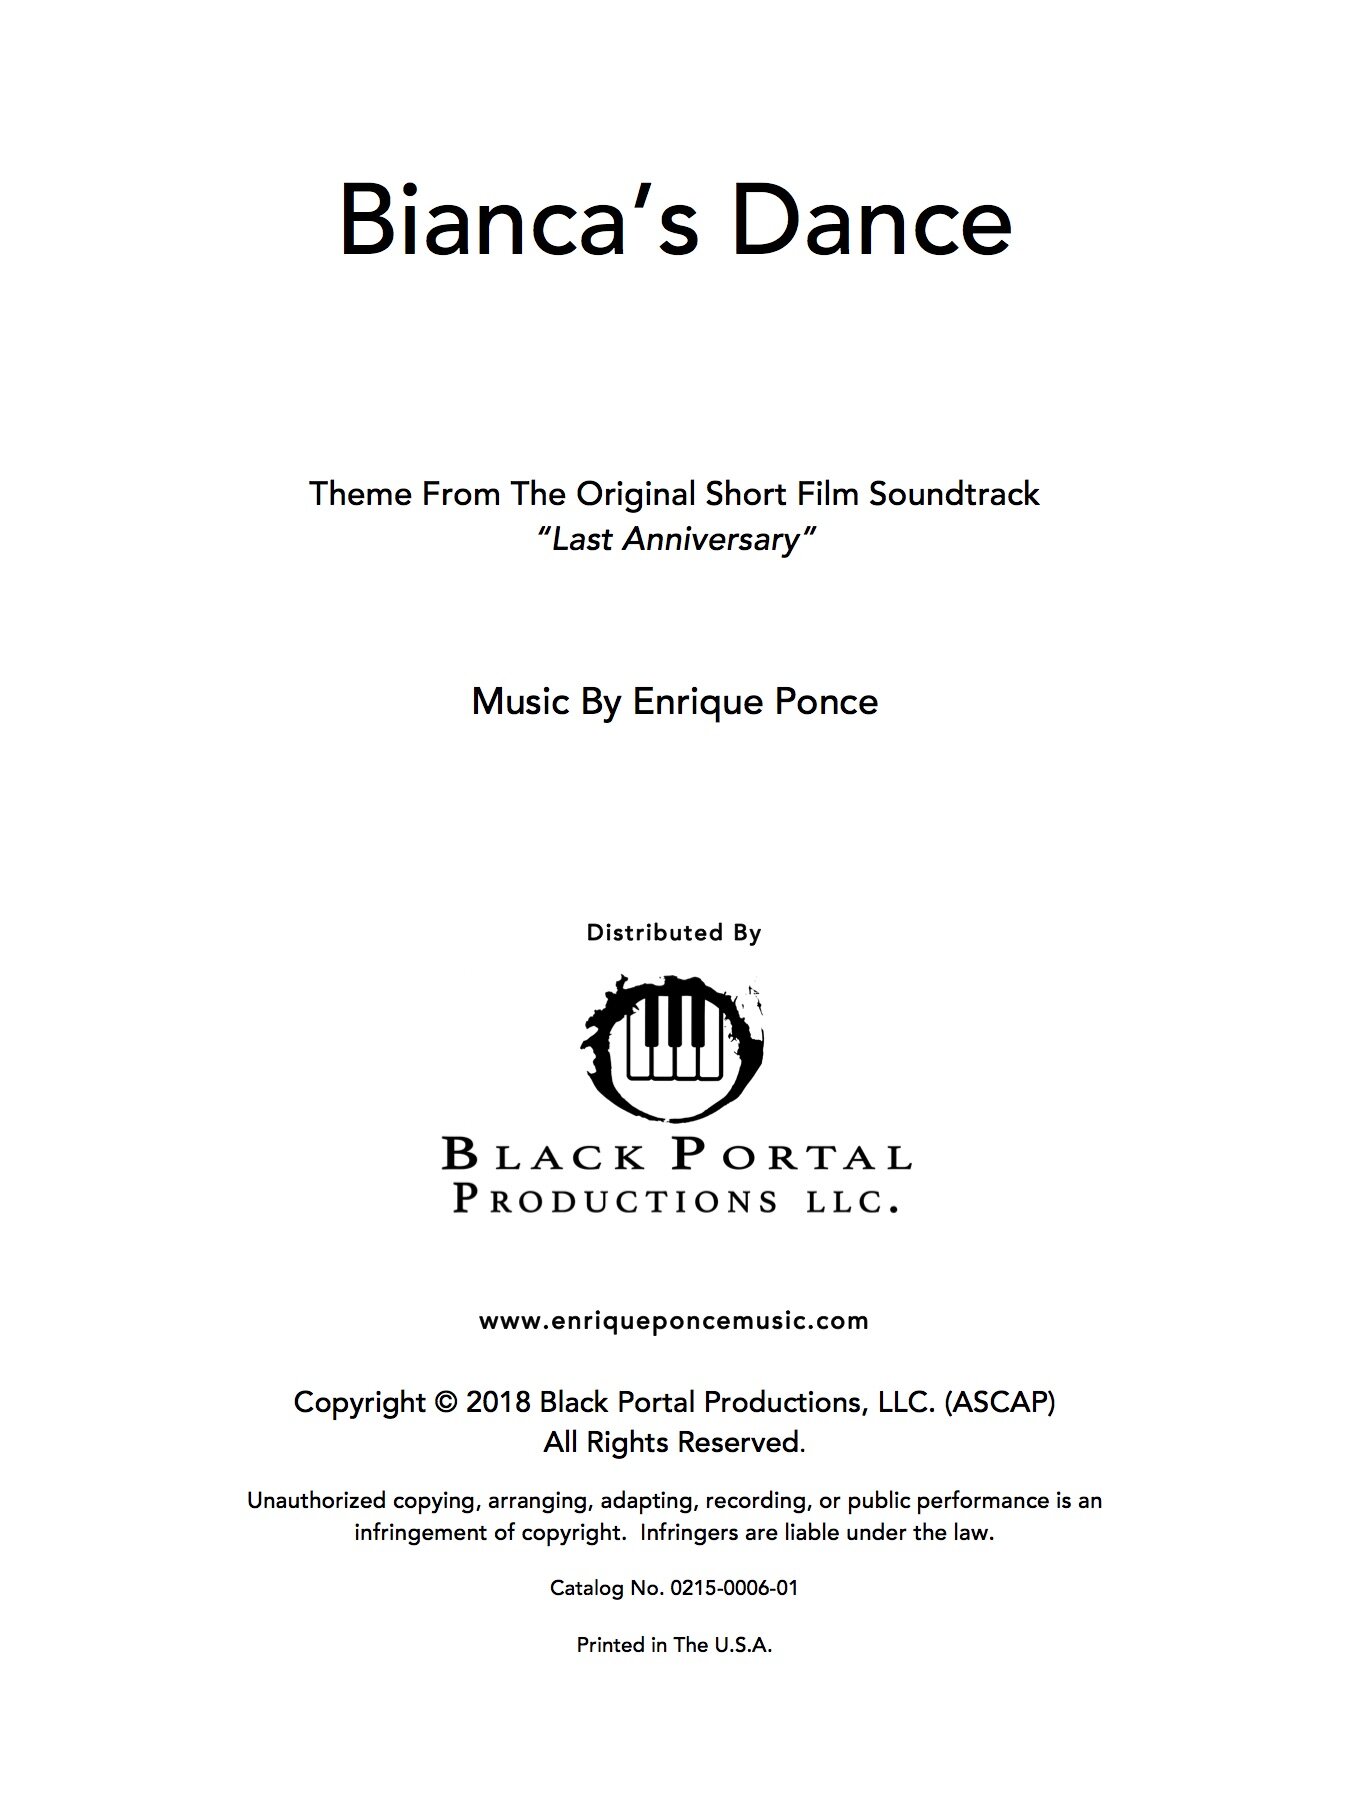 Bianca's Dance1.jpg